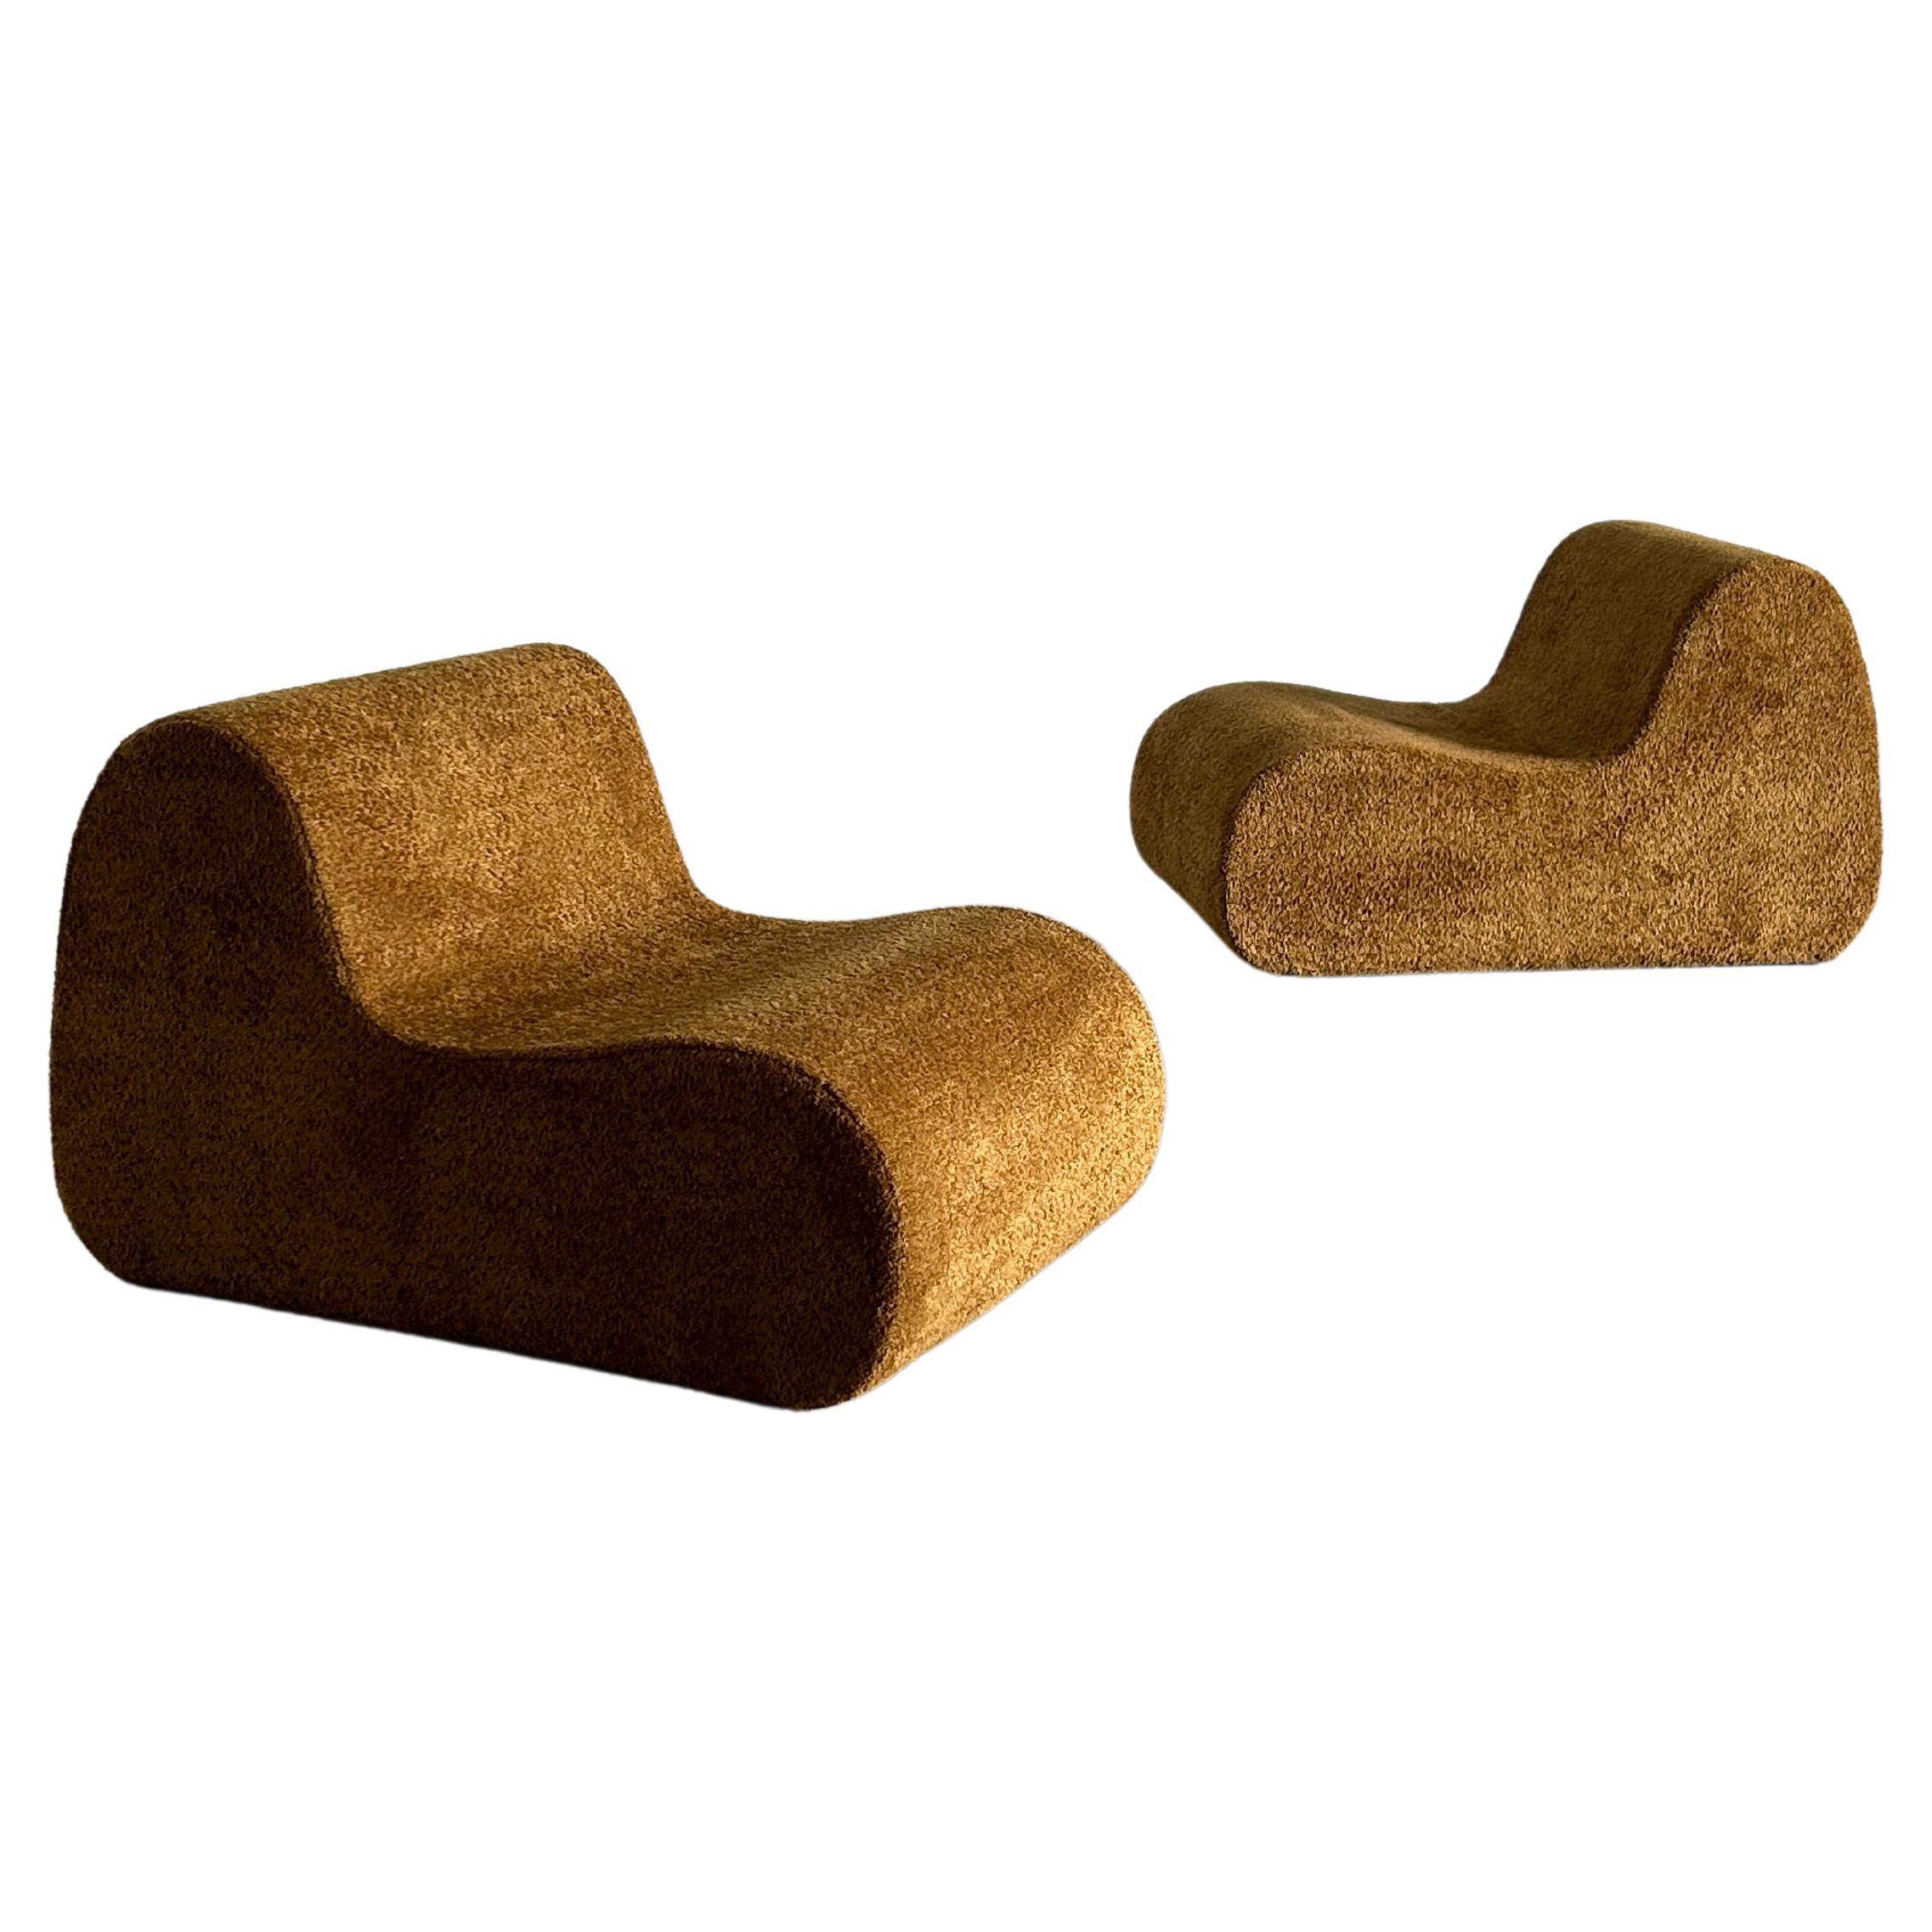 Vintage Italian Mid-Century Modern Lounge Chair oder Clubsessel.
Schöne und einzigartige Form.
Vollständig aus Schaumstoff mit Holzgestell gefertigt und mit einem hochwertigen ockerfarbenen Bouclé-Stoff bezogen.

Verkauft pro Stück.
Acht Stück